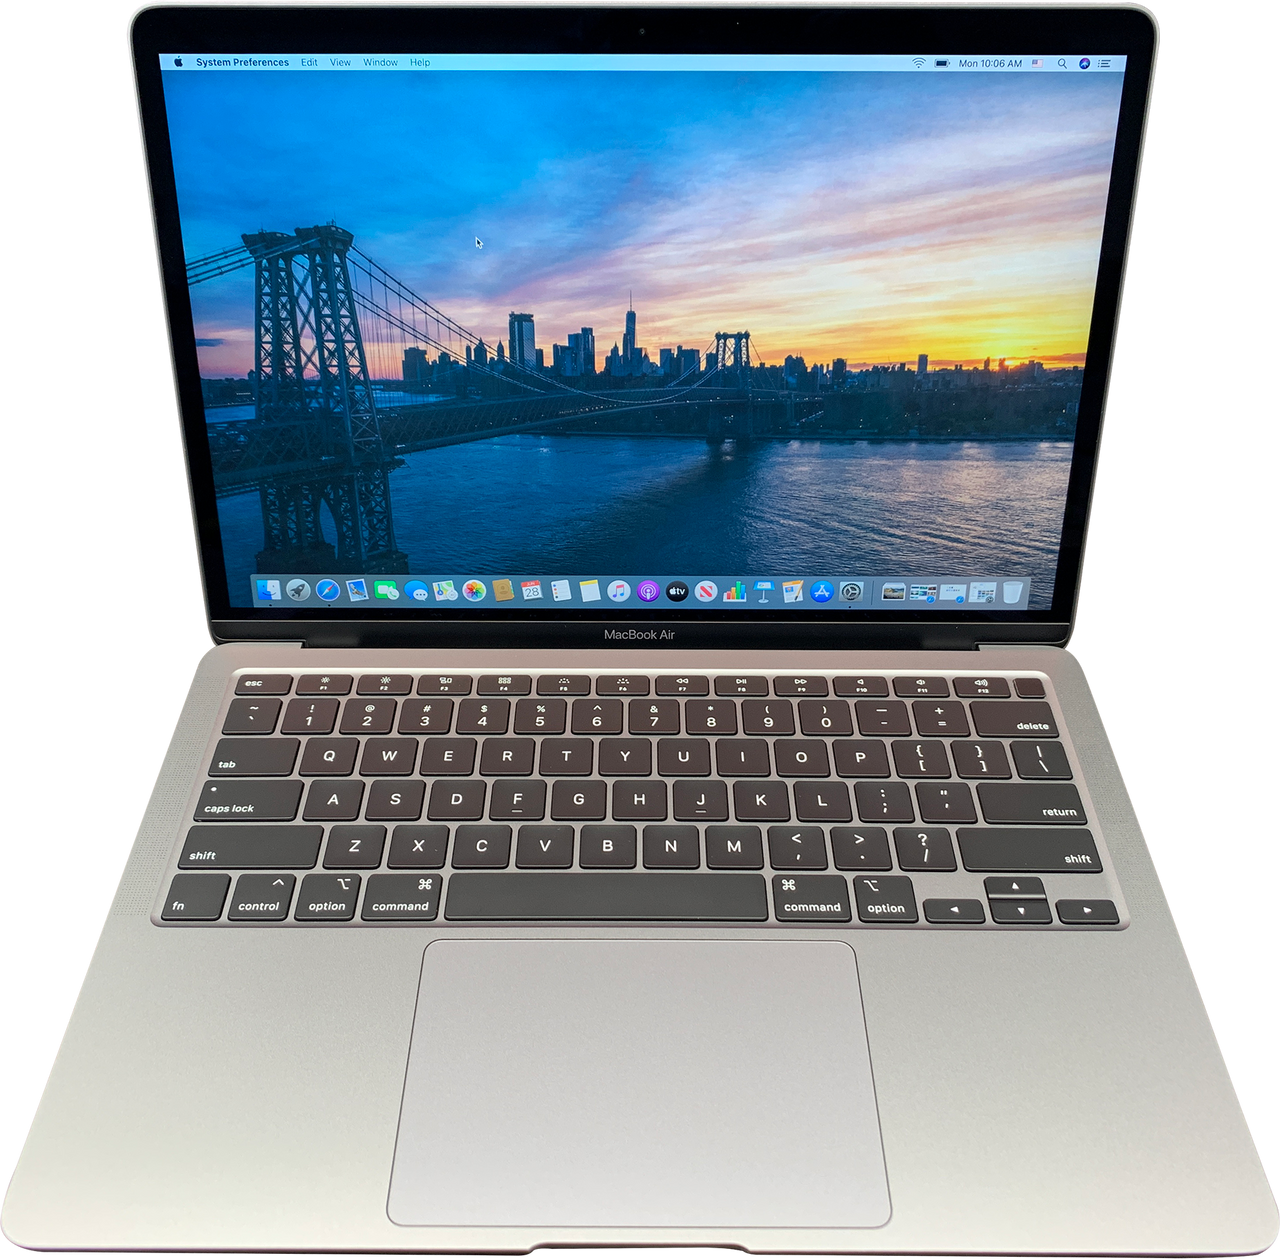 Apple Macbook Air 13-inch 1.6GHz Intel i5 8th Gen Dual Core Turbo (Silver -  2018) MVFH2LL/A - 8GB RAM 256GB SSD